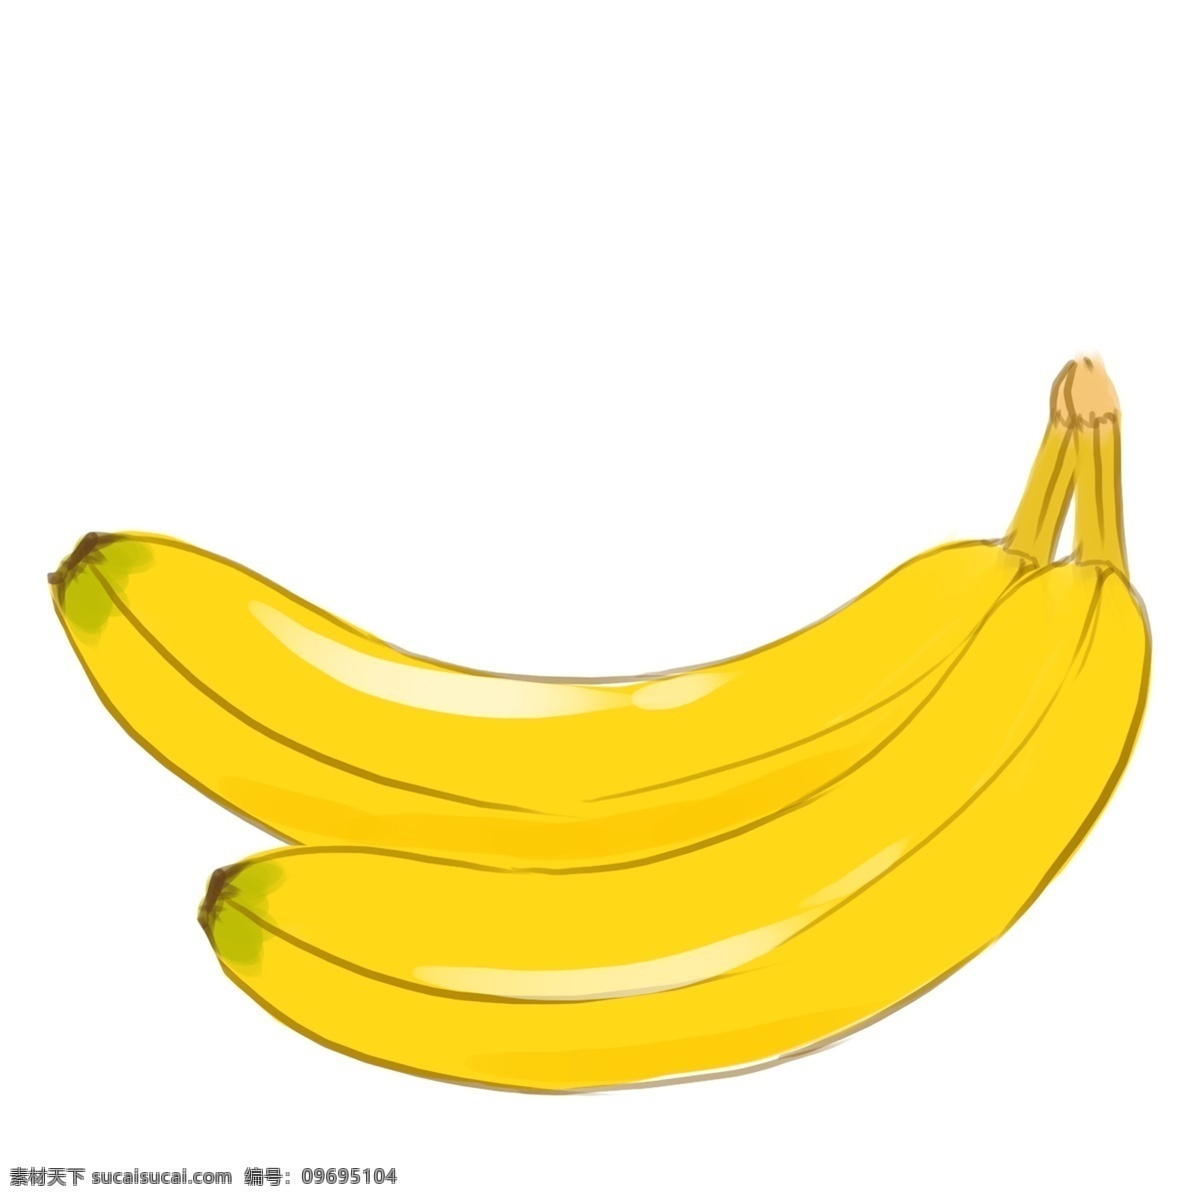 卡通香蕉 香蕉 简笔 手绘 夏季 手绘卡通素材 水彩 健康 水果 美味 彩绘 卡通设计